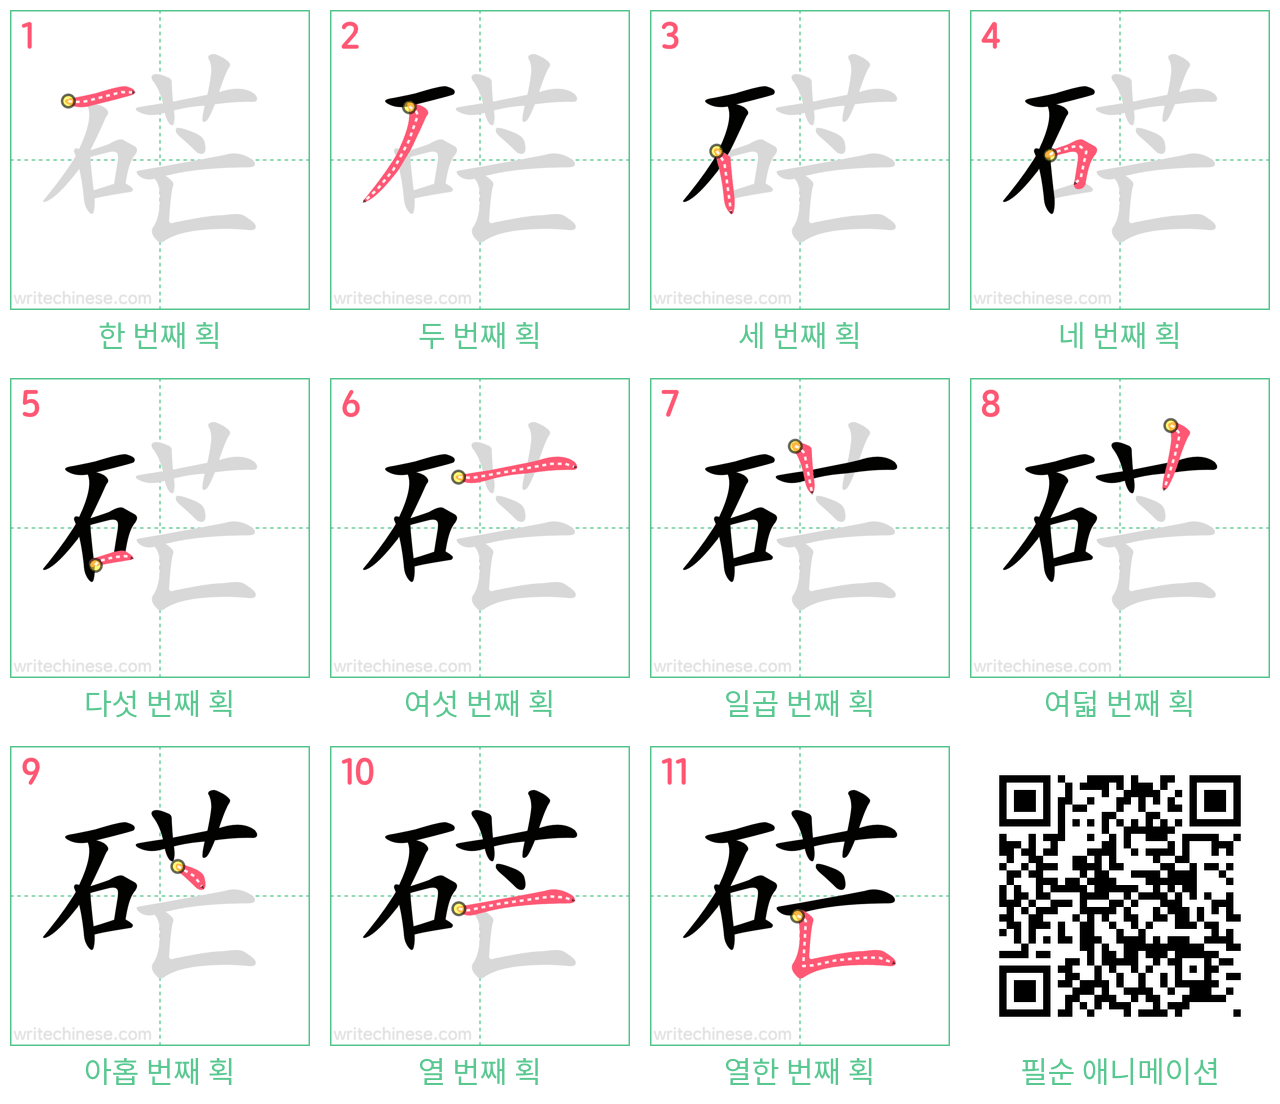 硭 step-by-step stroke order diagrams